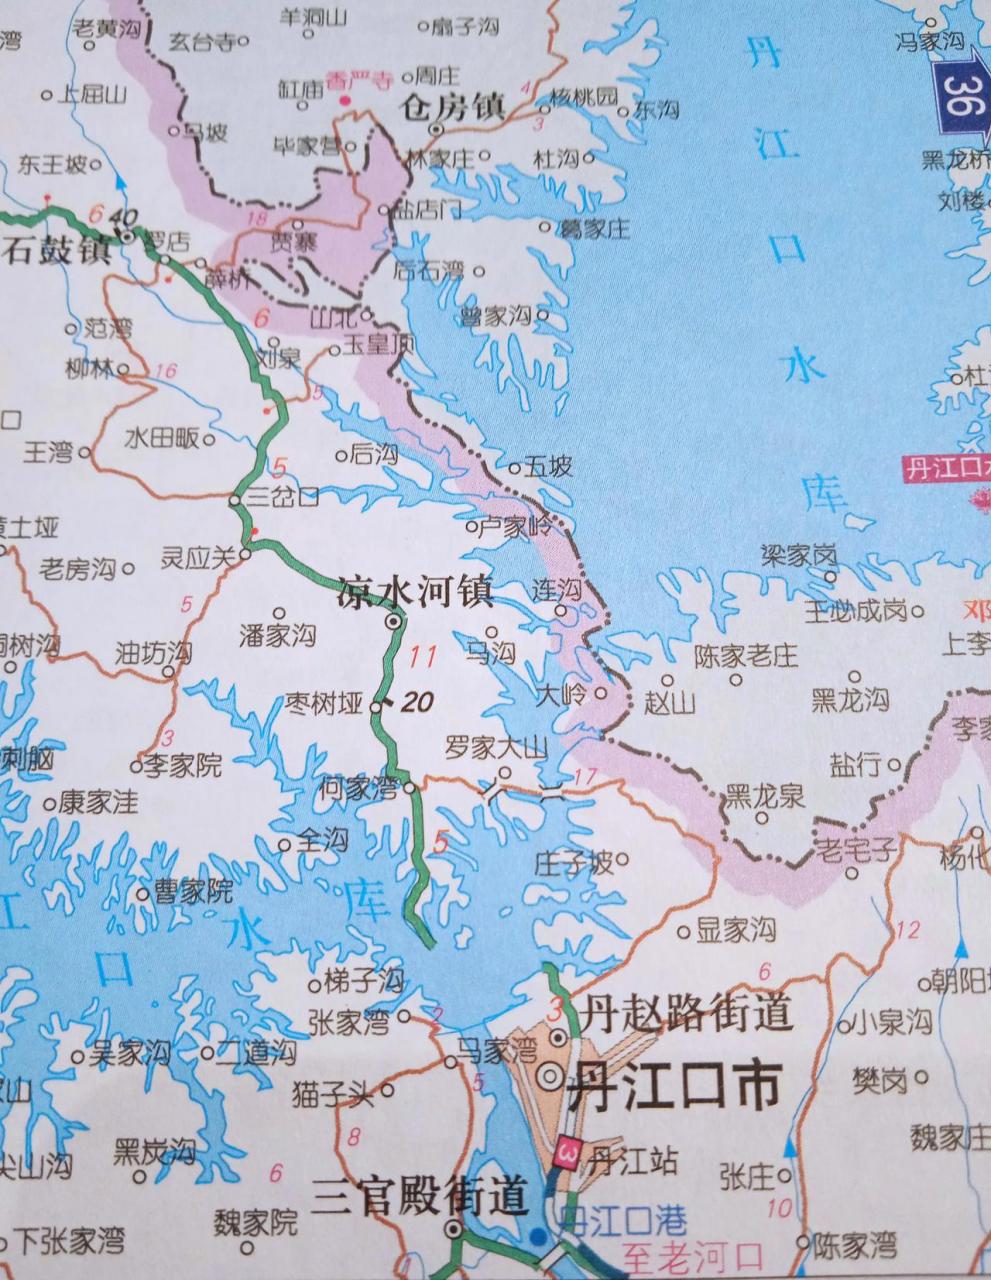 中国水都,亚洲天池——丹江口市,这是湖北省的县级市,由十堰市代管